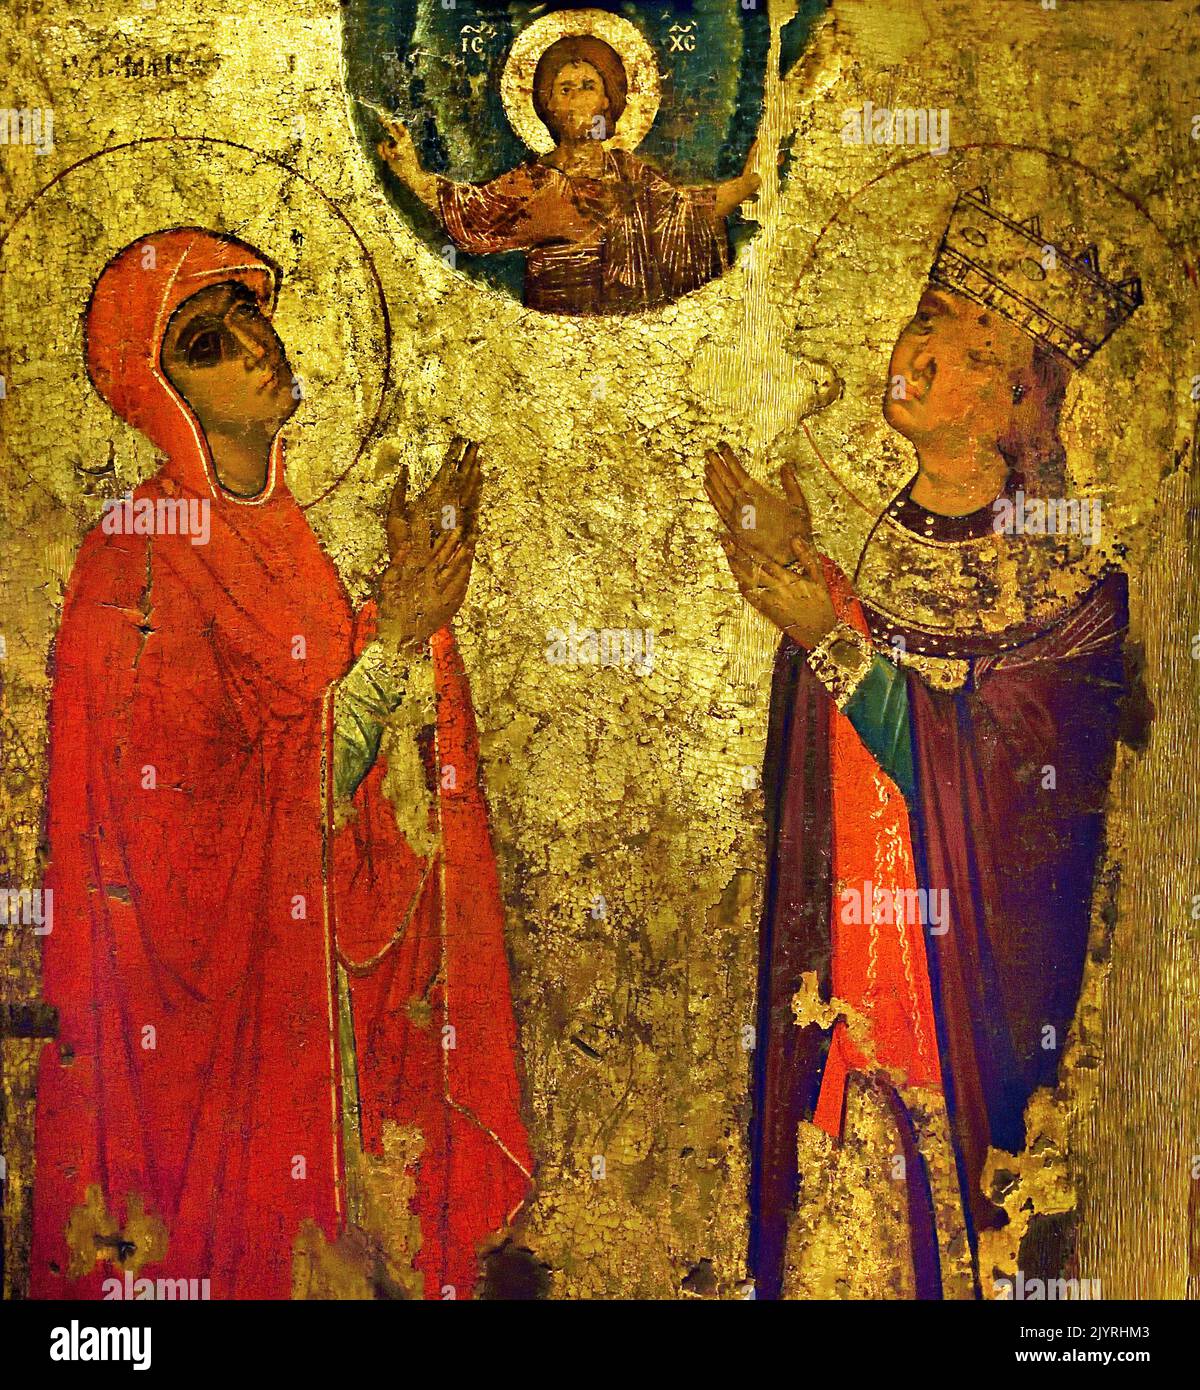 Heilige Marina und Irene 13. Jahrhundert, byzantinisches und christliches Museum in Athen, ( kombiniert Elemente des byzantinischen und westlichen Stils, aus Kastoria. Stockfoto